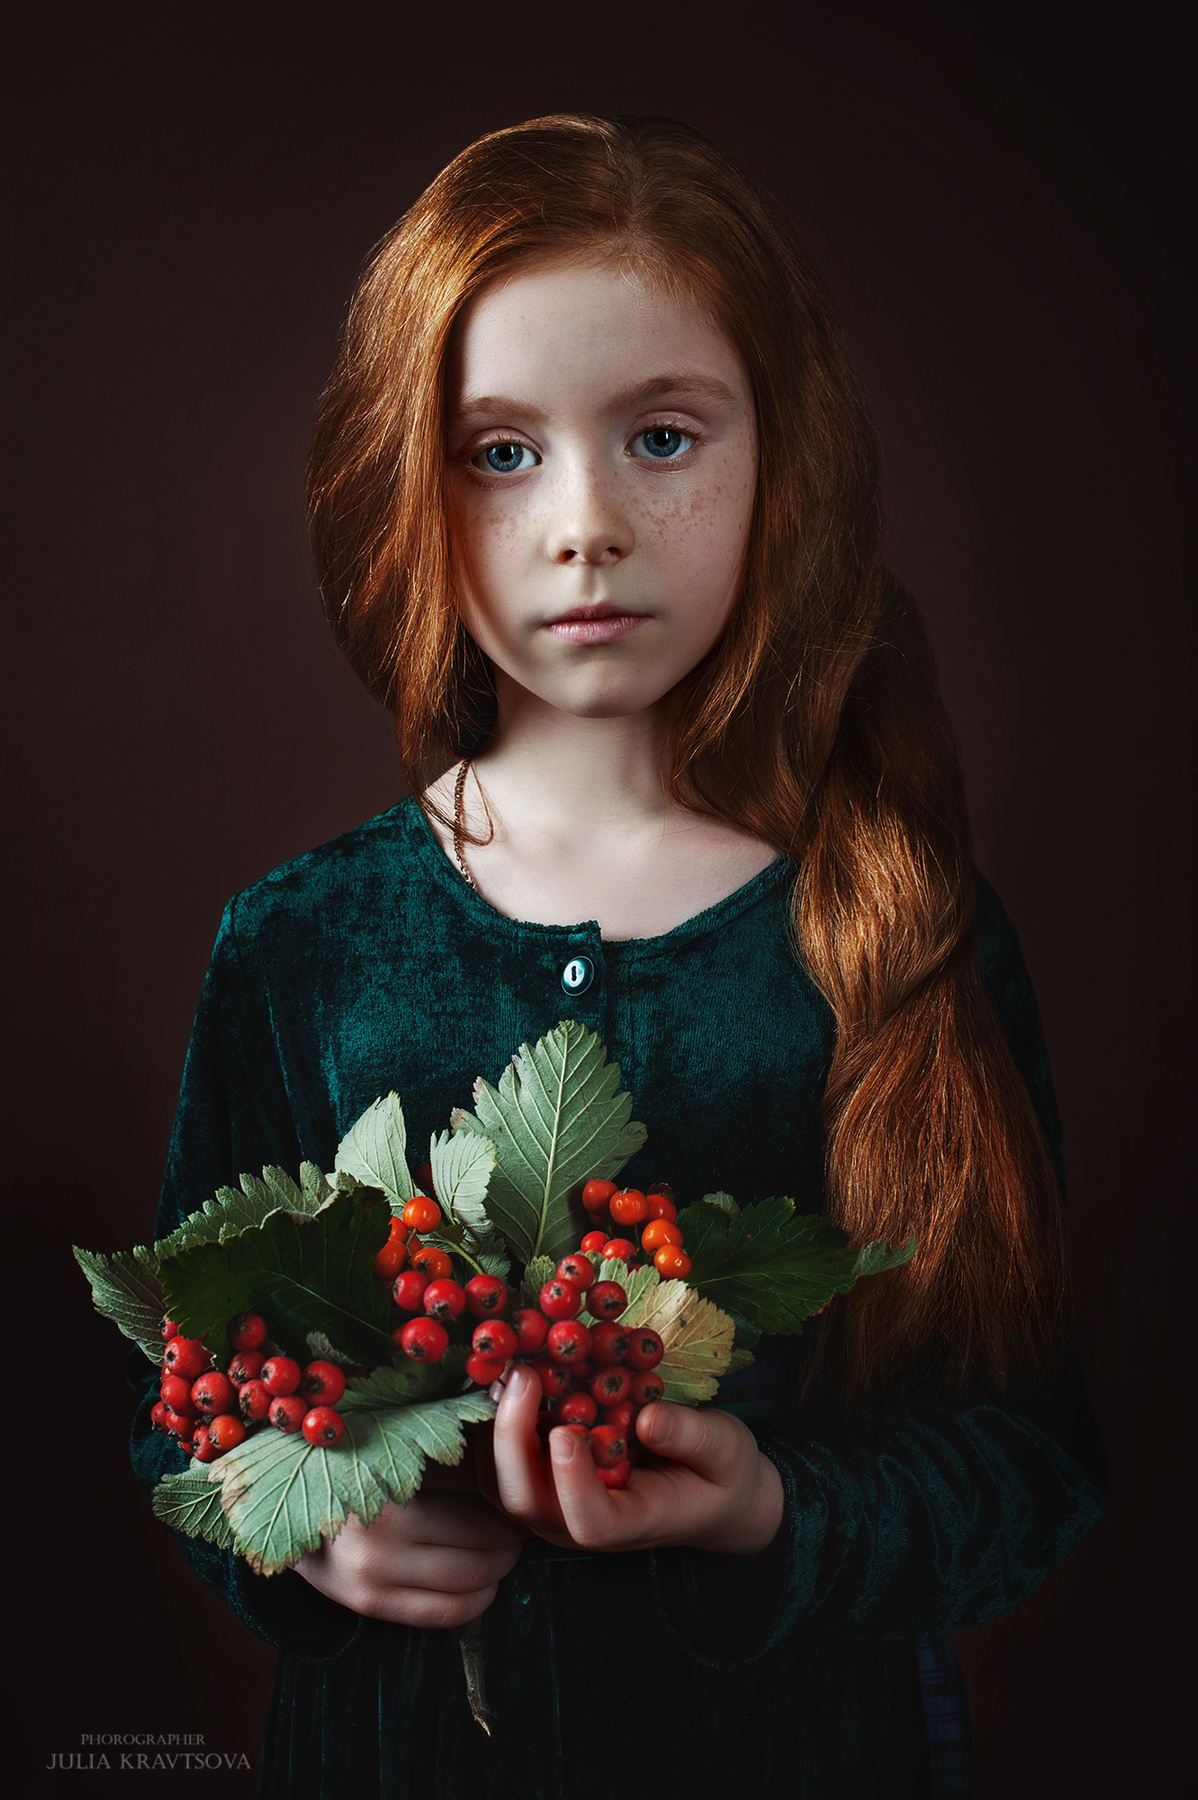 Катерина рыжая девочка портрет рябина